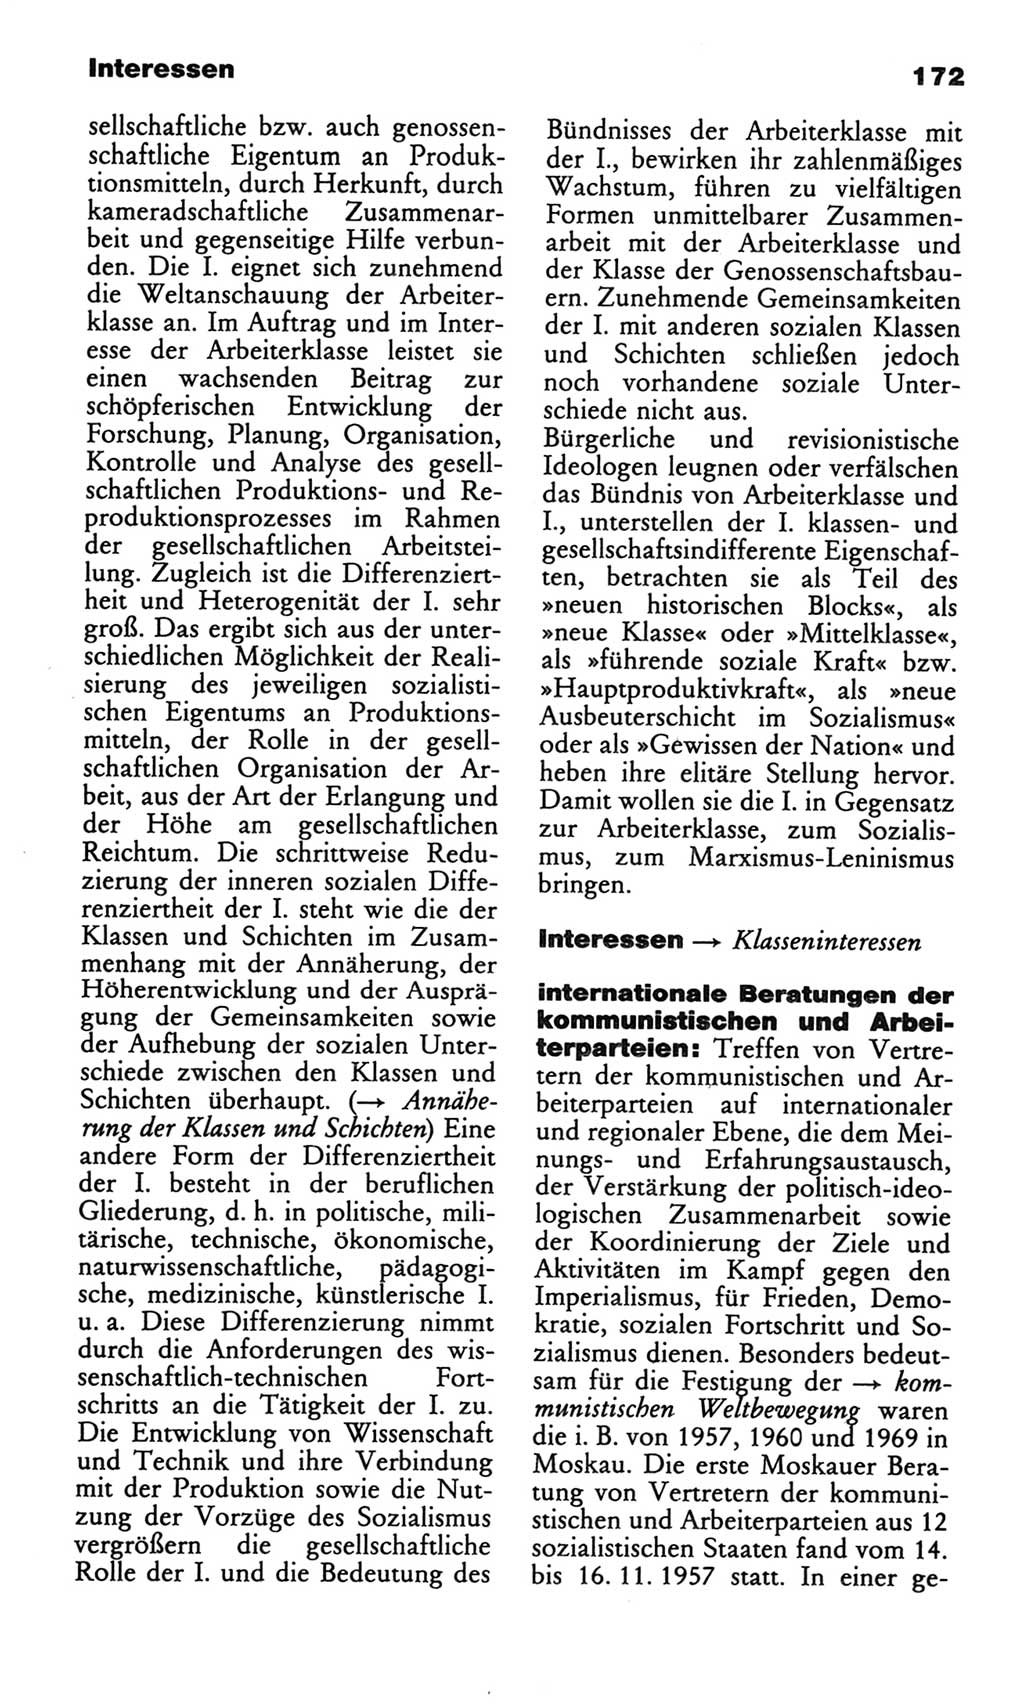 Wörterbuch des wissenschaftlichen Kommunismus [Deutsche Demokratische Republik (DDR)] 1982, Seite 172 (Wb. wiss. Komm. DDR 1982, S. 172)